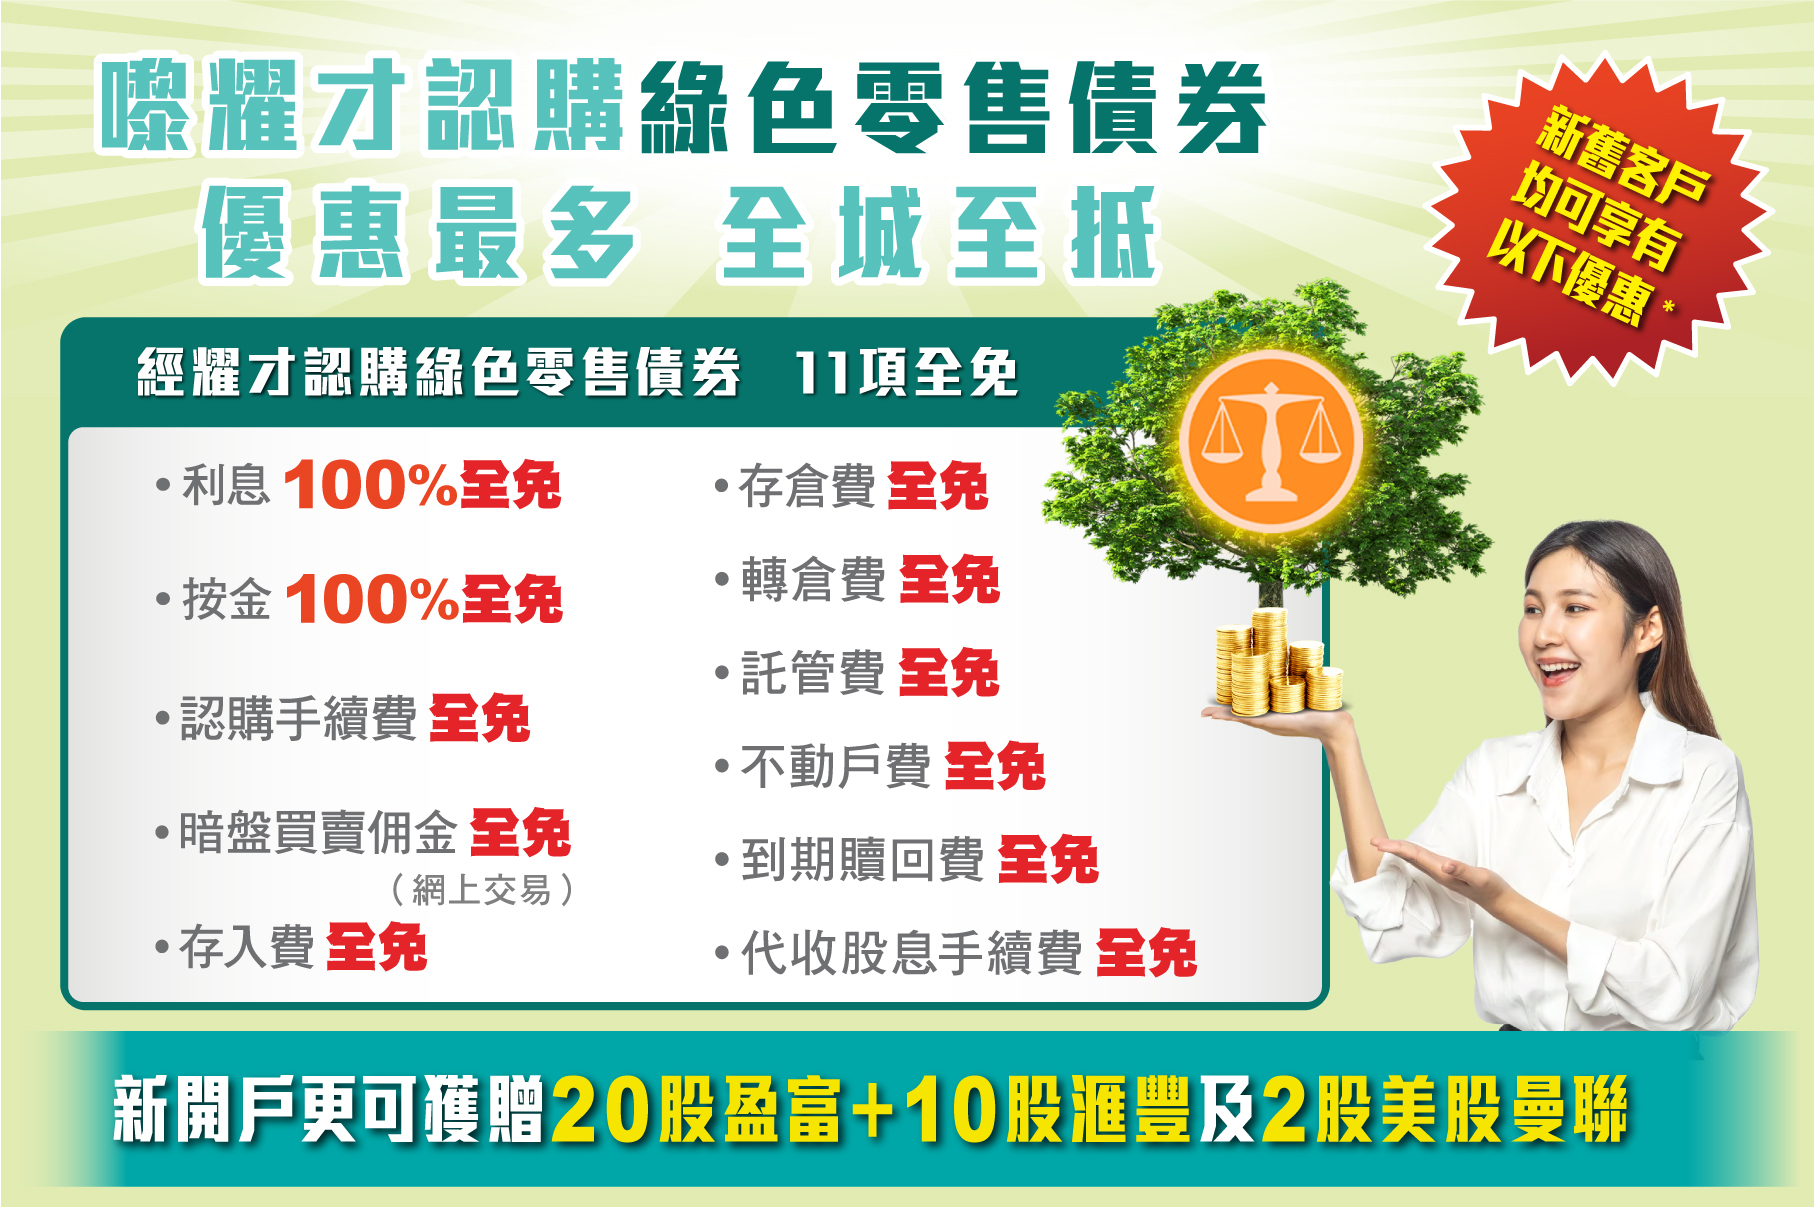 耀才證券認購綠色零售債券(4273.HK)